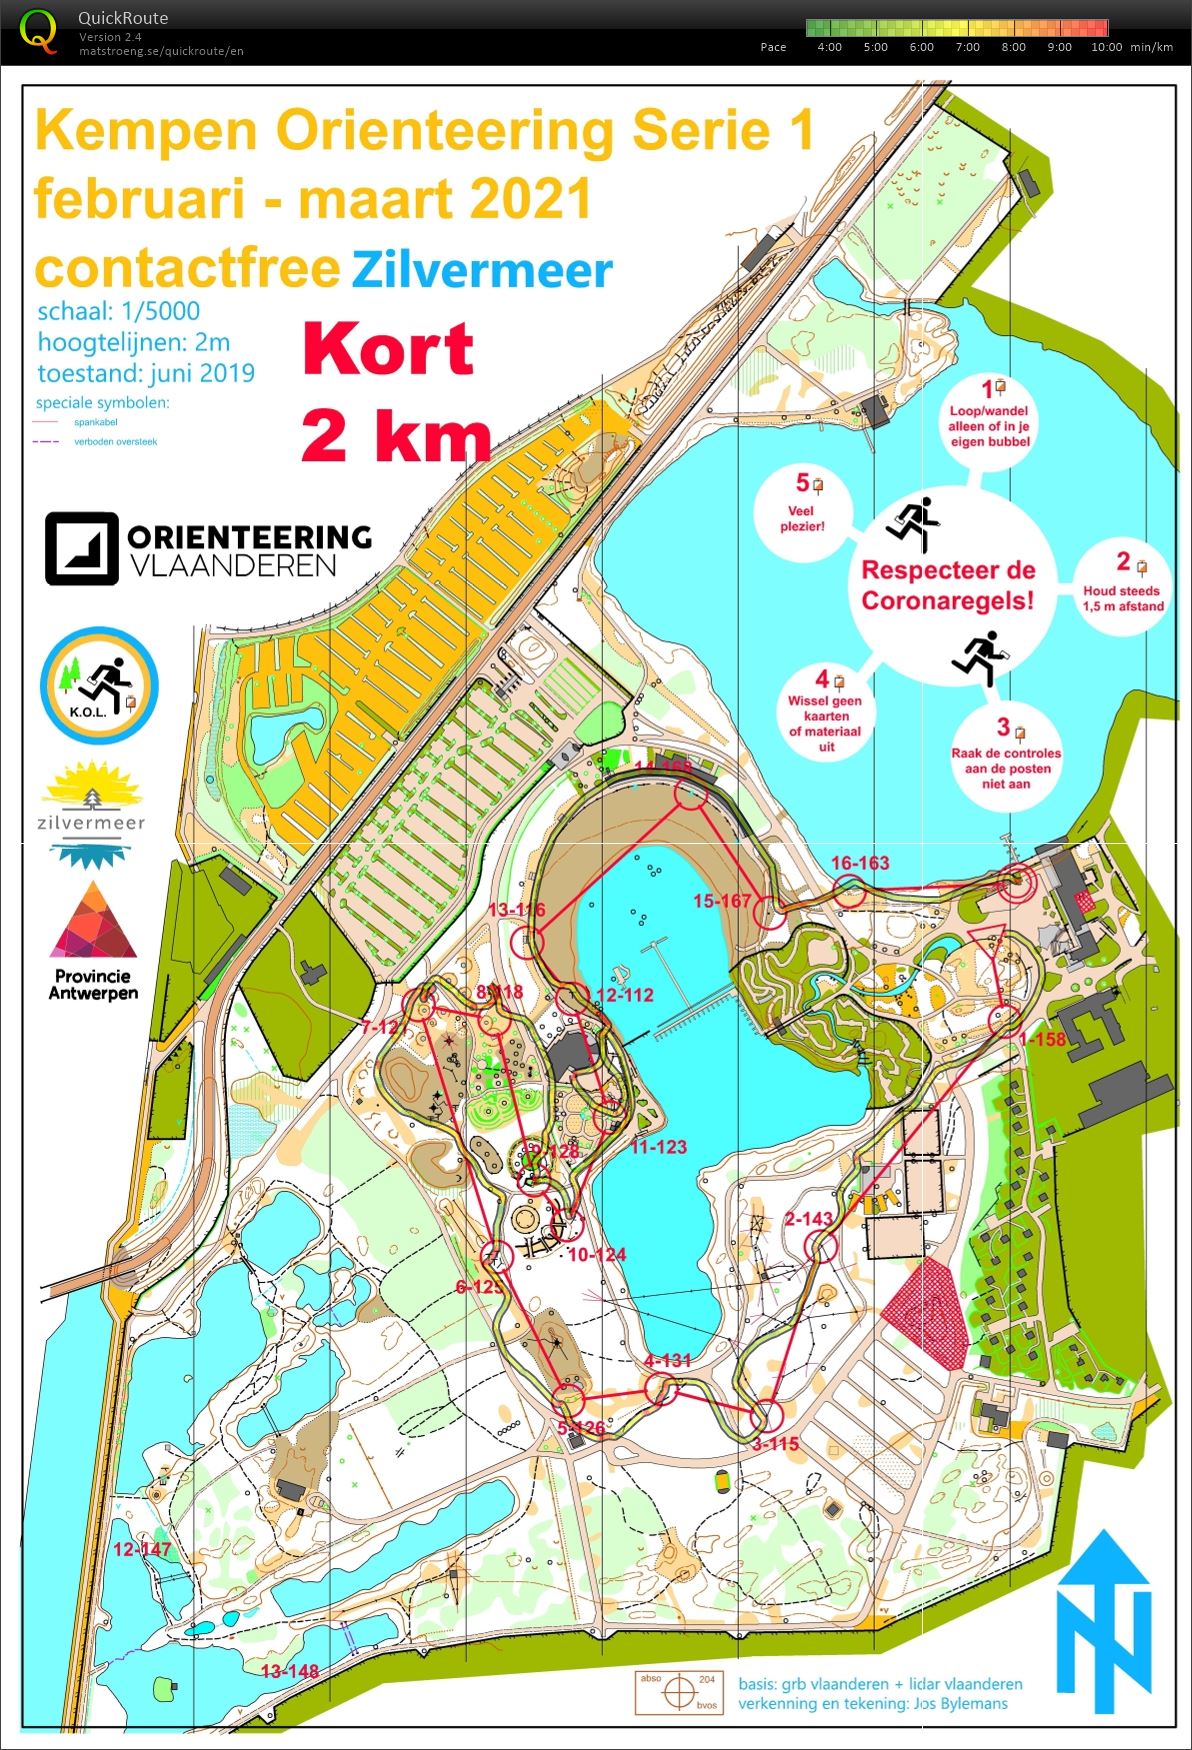 Kempen Orienteering Series - Zilvermeer - Kort (07.03.2021)